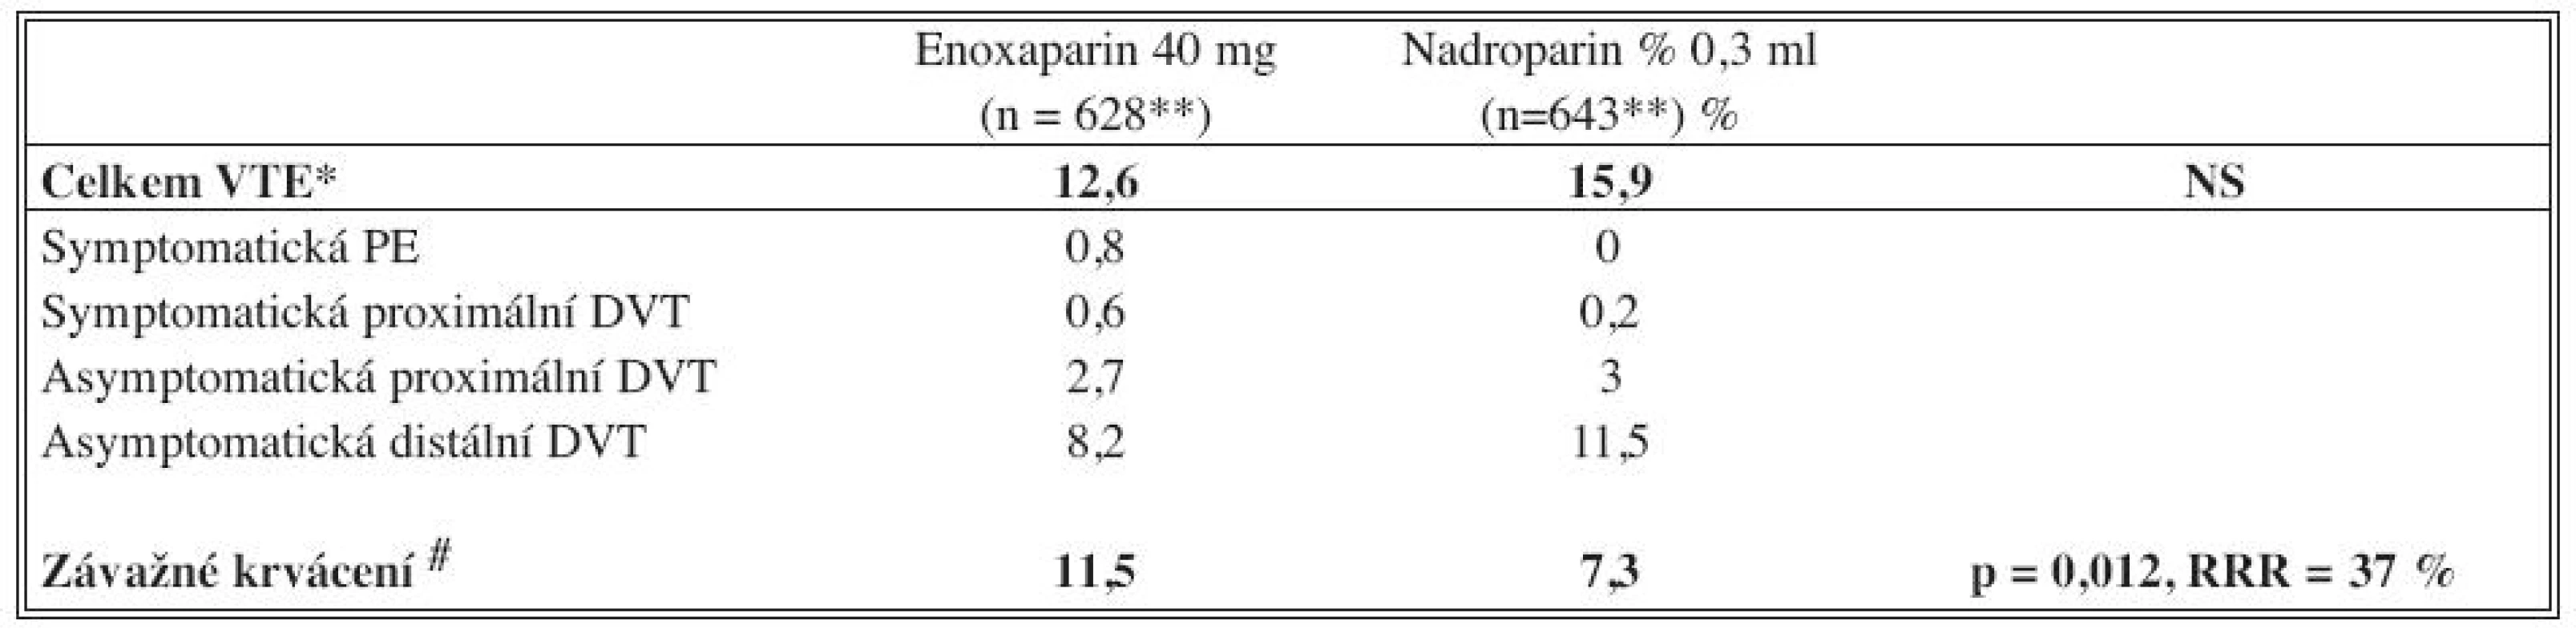 Výskyt VTE a závažného krvácení při srovnání enoxaparin / nadroparin (upraveno podle [12]) 
Tab. 1. Occurrence of VTE and serious bleeding events, comparing enoxaparin / nadroparin (adjusted according [12])